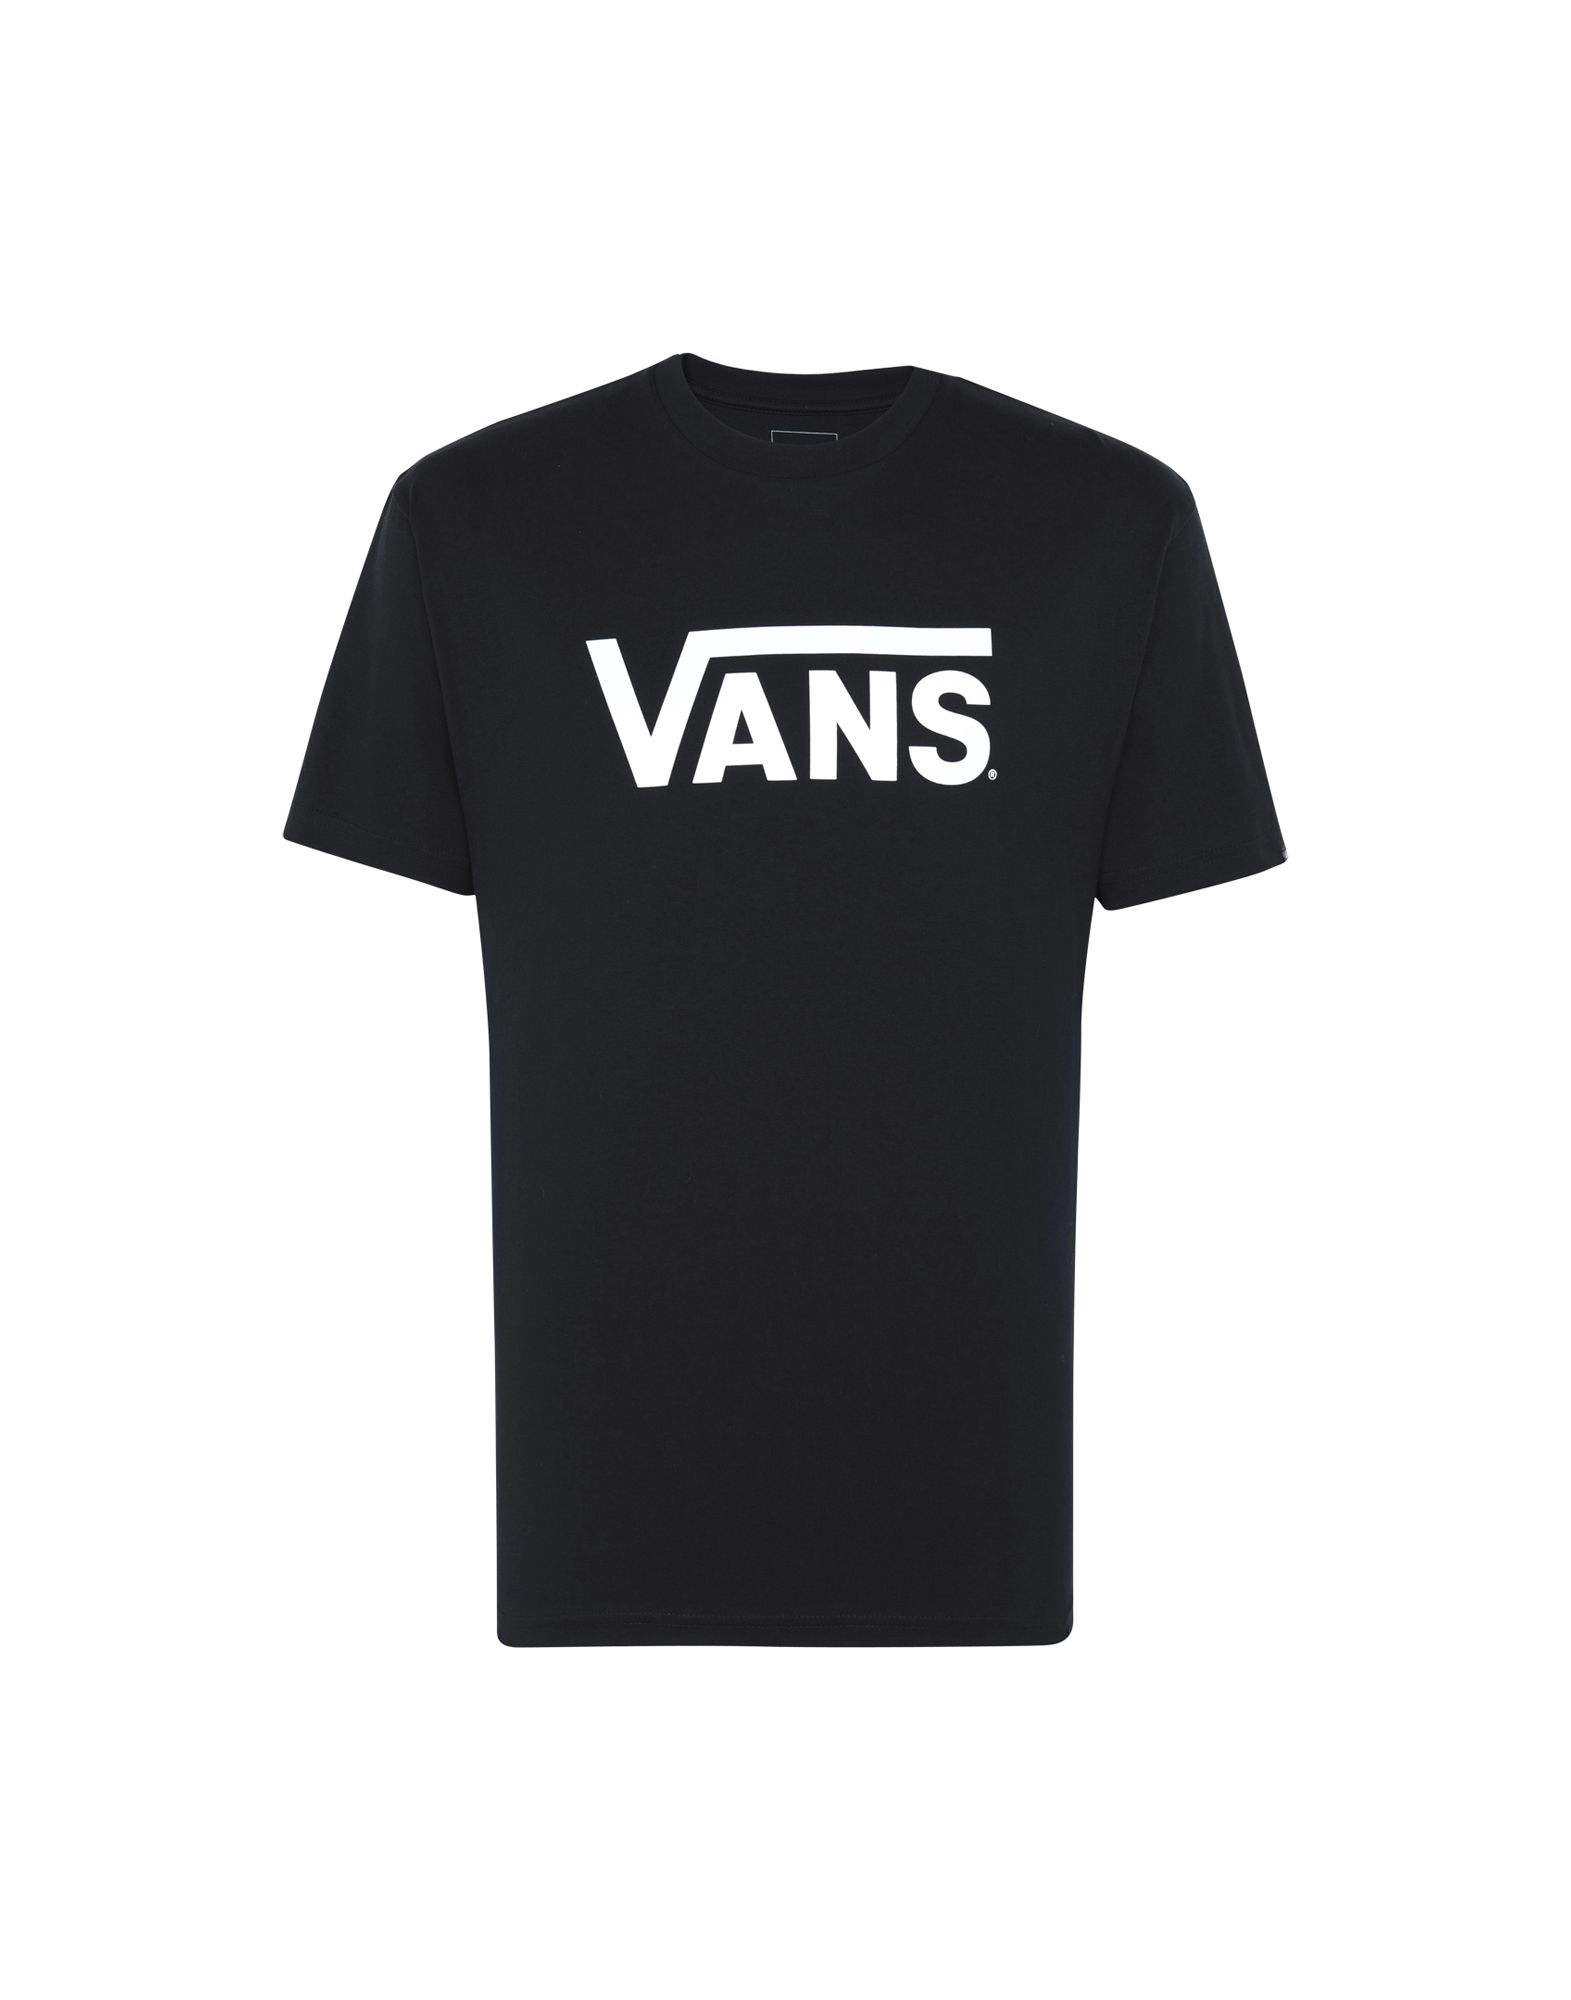 vans t shirt clearance